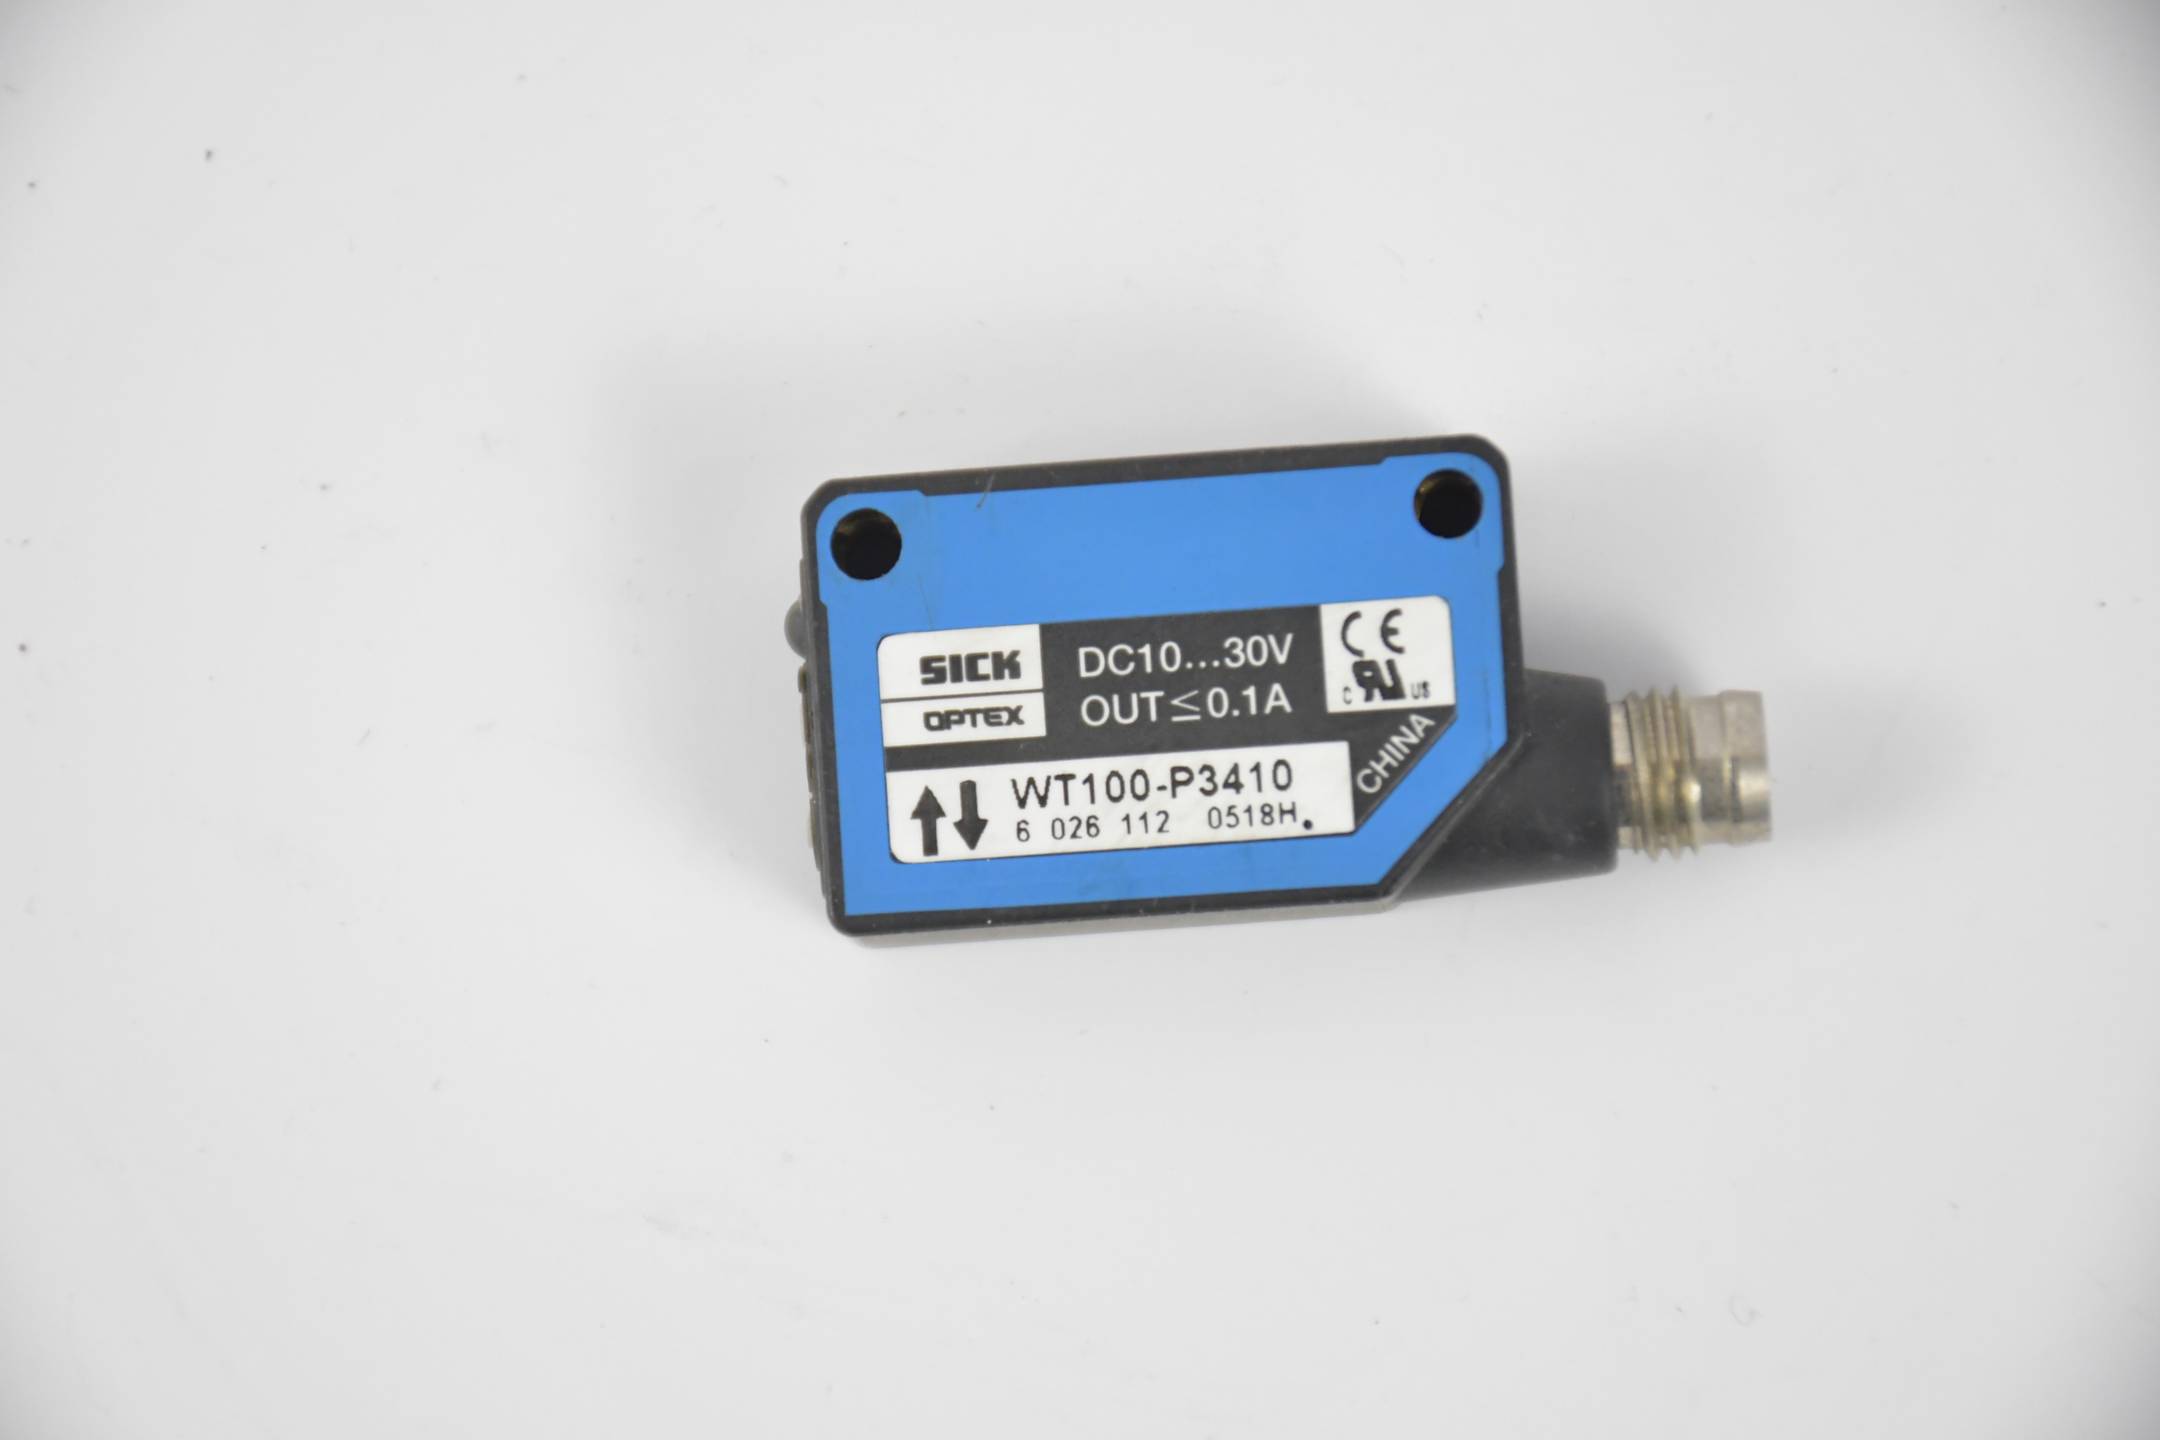 Sick Miniatur-Lichtschranken WT100-P3410 ( 6026112 )